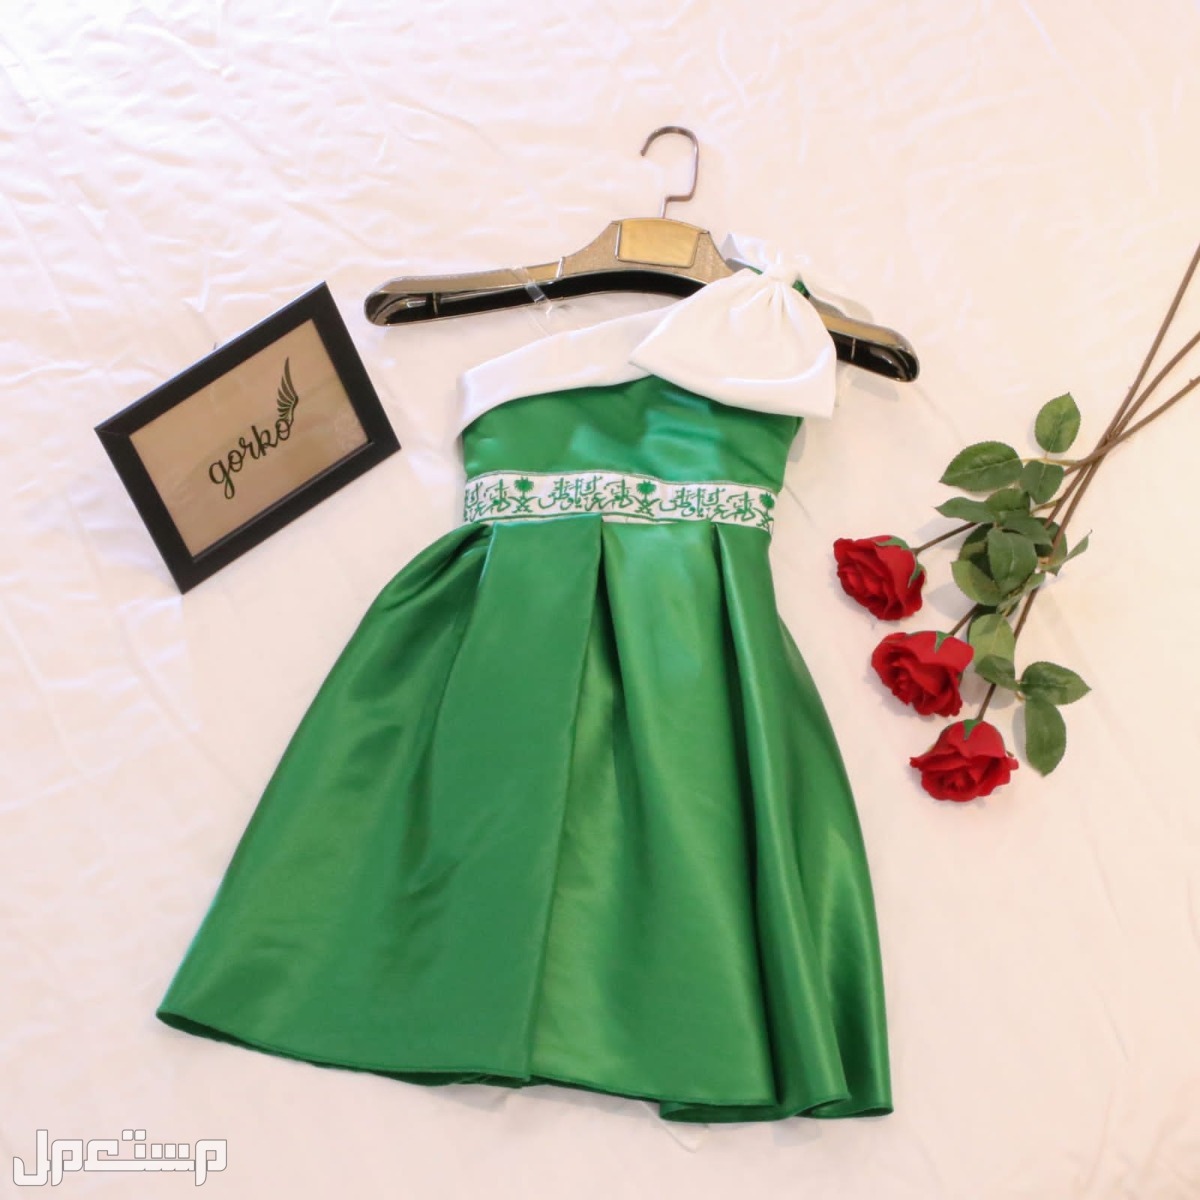 فستان اليوم الوطني *بناتي* ماركة ساتان في الرياض بسعر 150 ريال سعودي شحن جميع مناطق المملكة